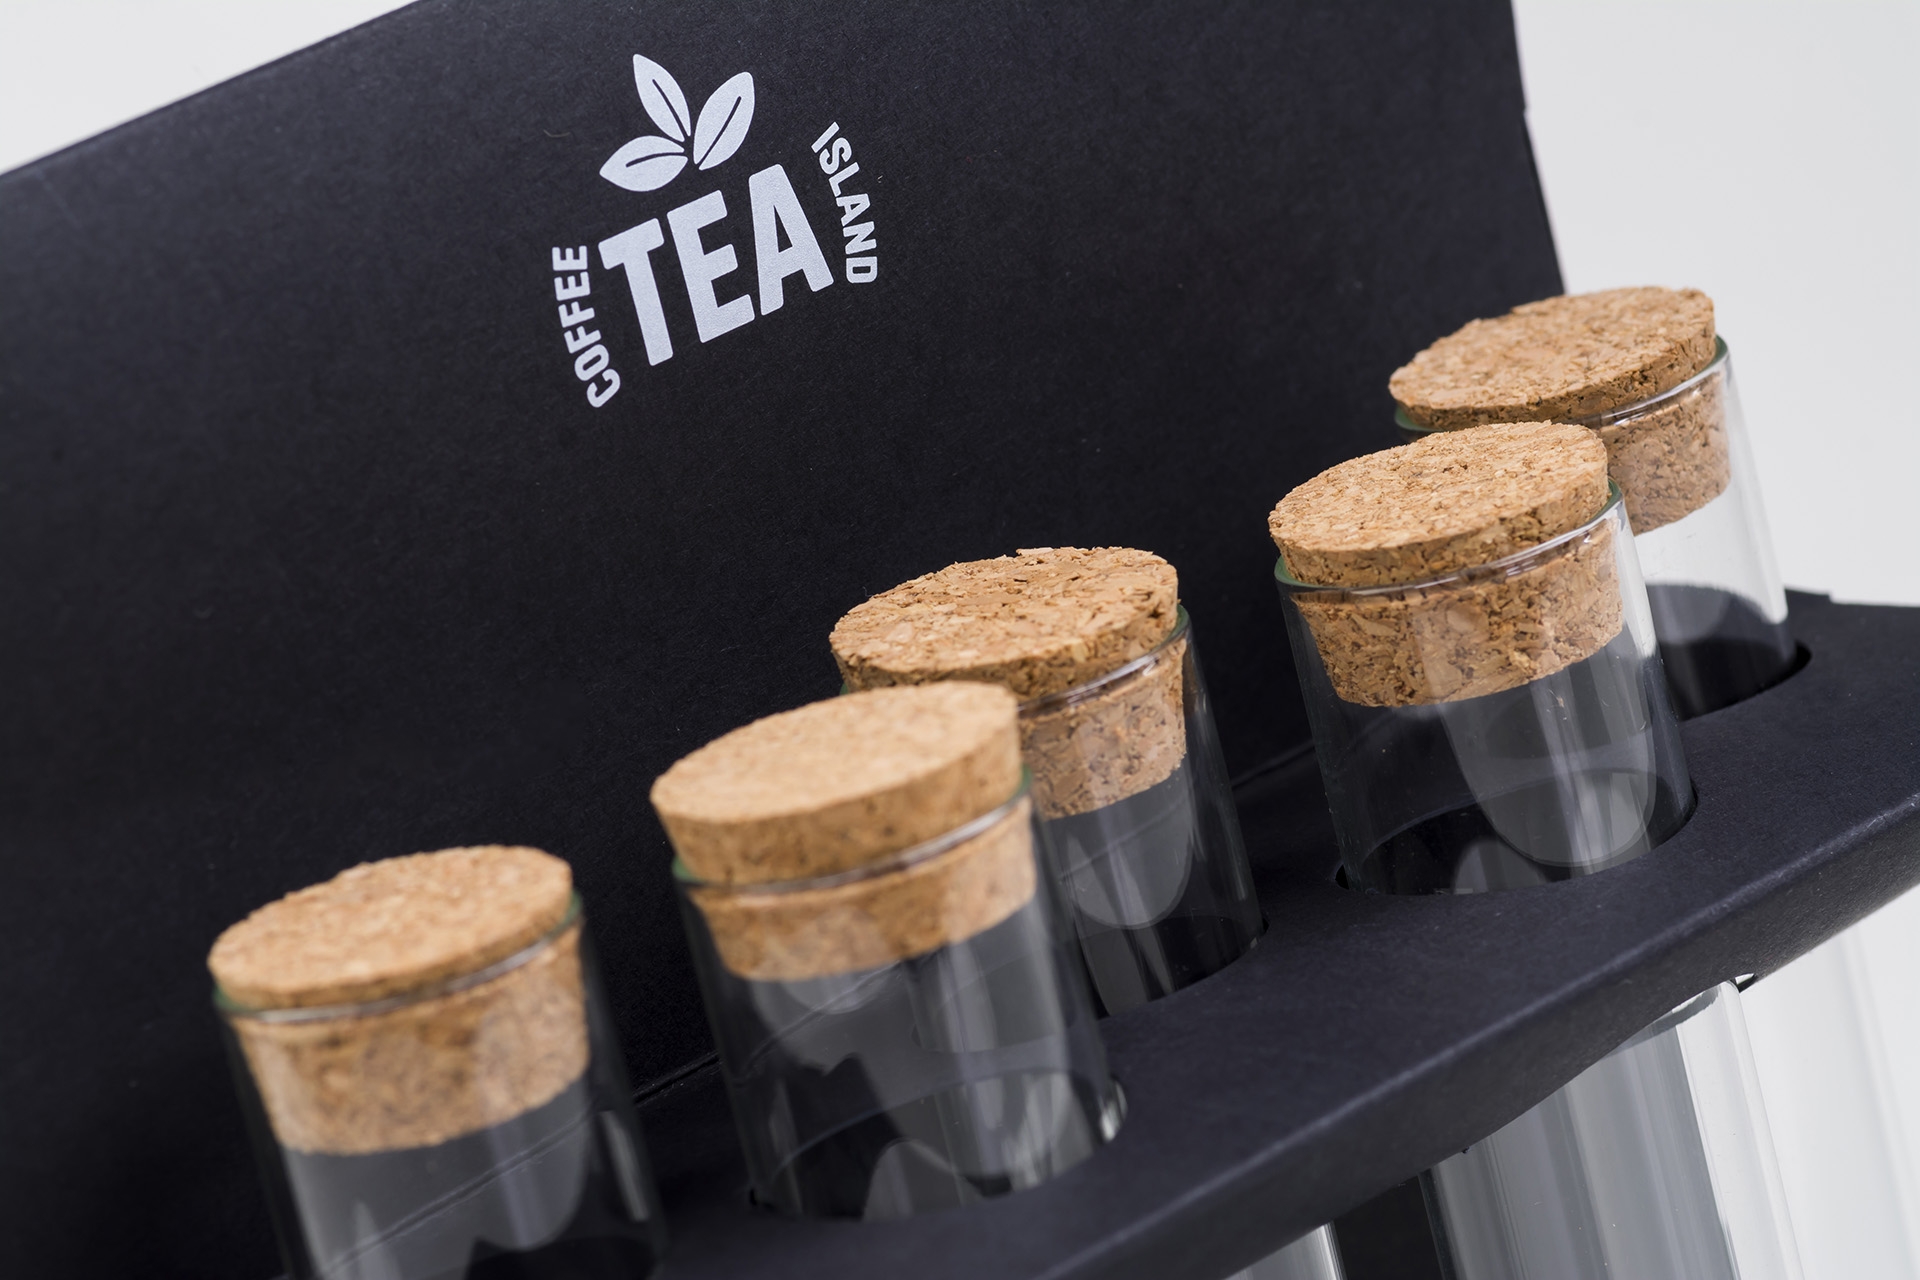 TEA Packaging